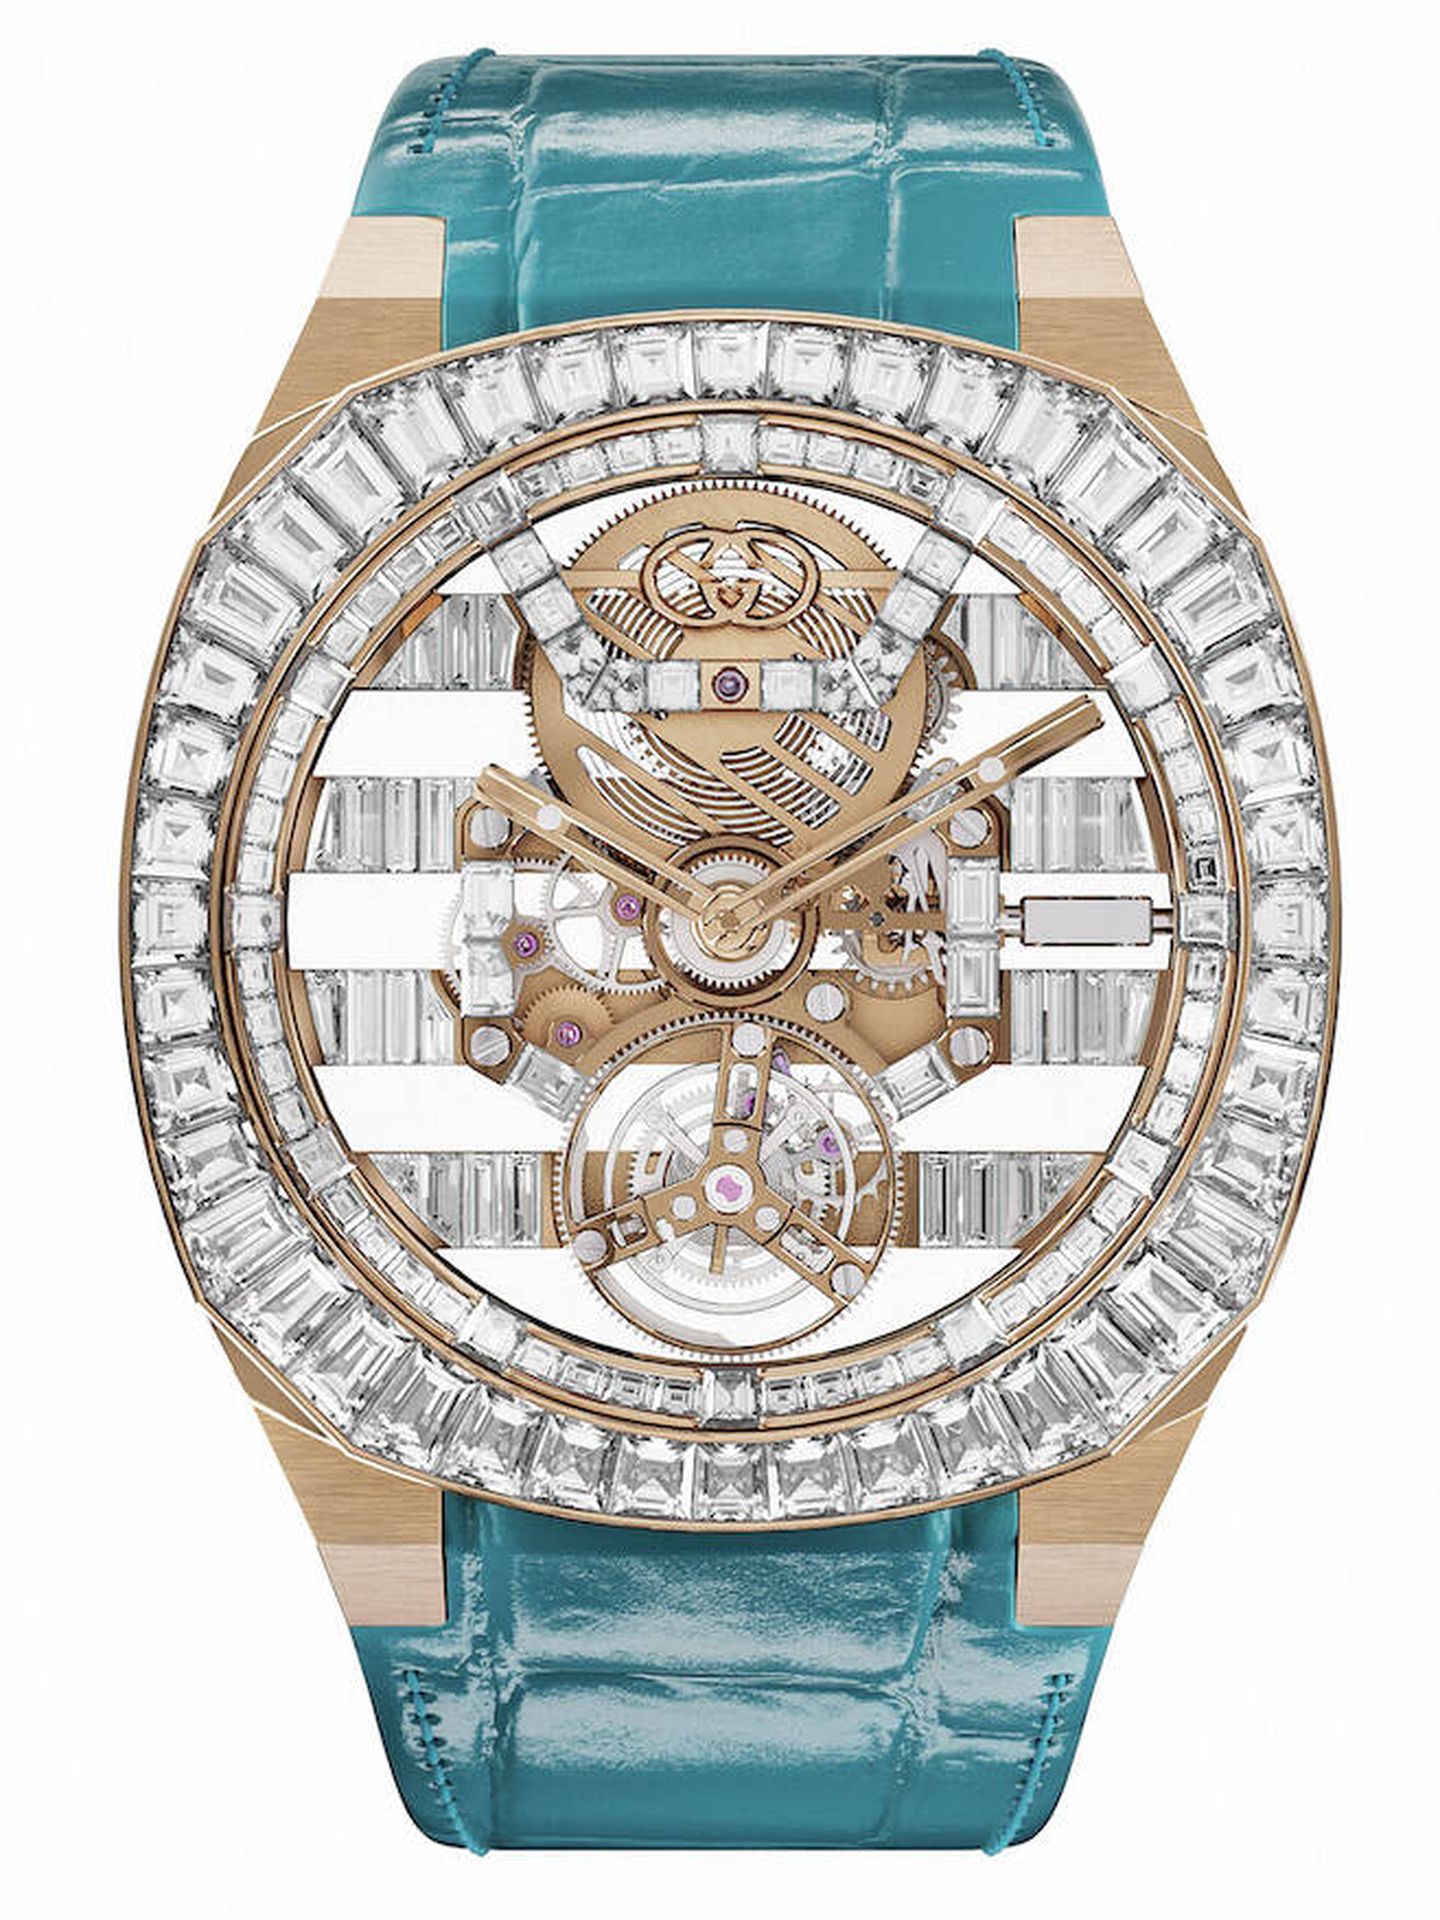 Gucci H25 apuesta por la alta relojería con un tourbillon volante. (Cortesía)